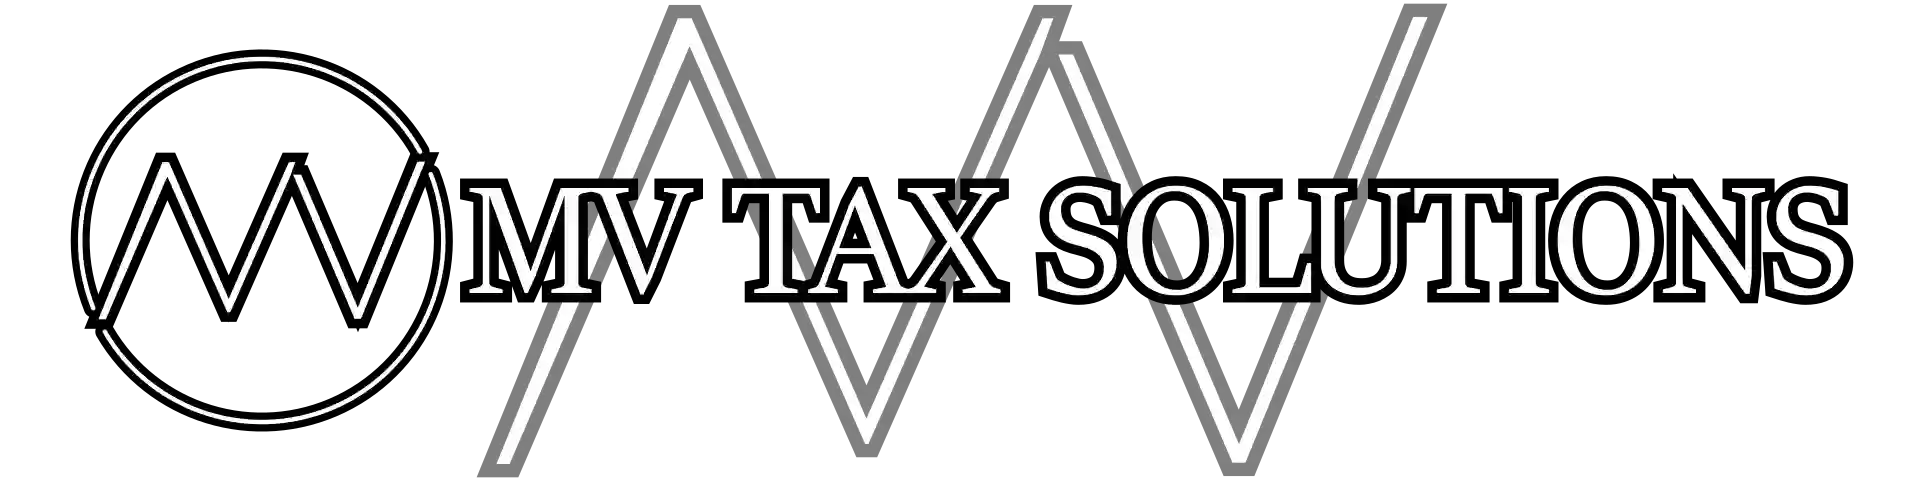 MV Tax Solutions (Taxbusters)